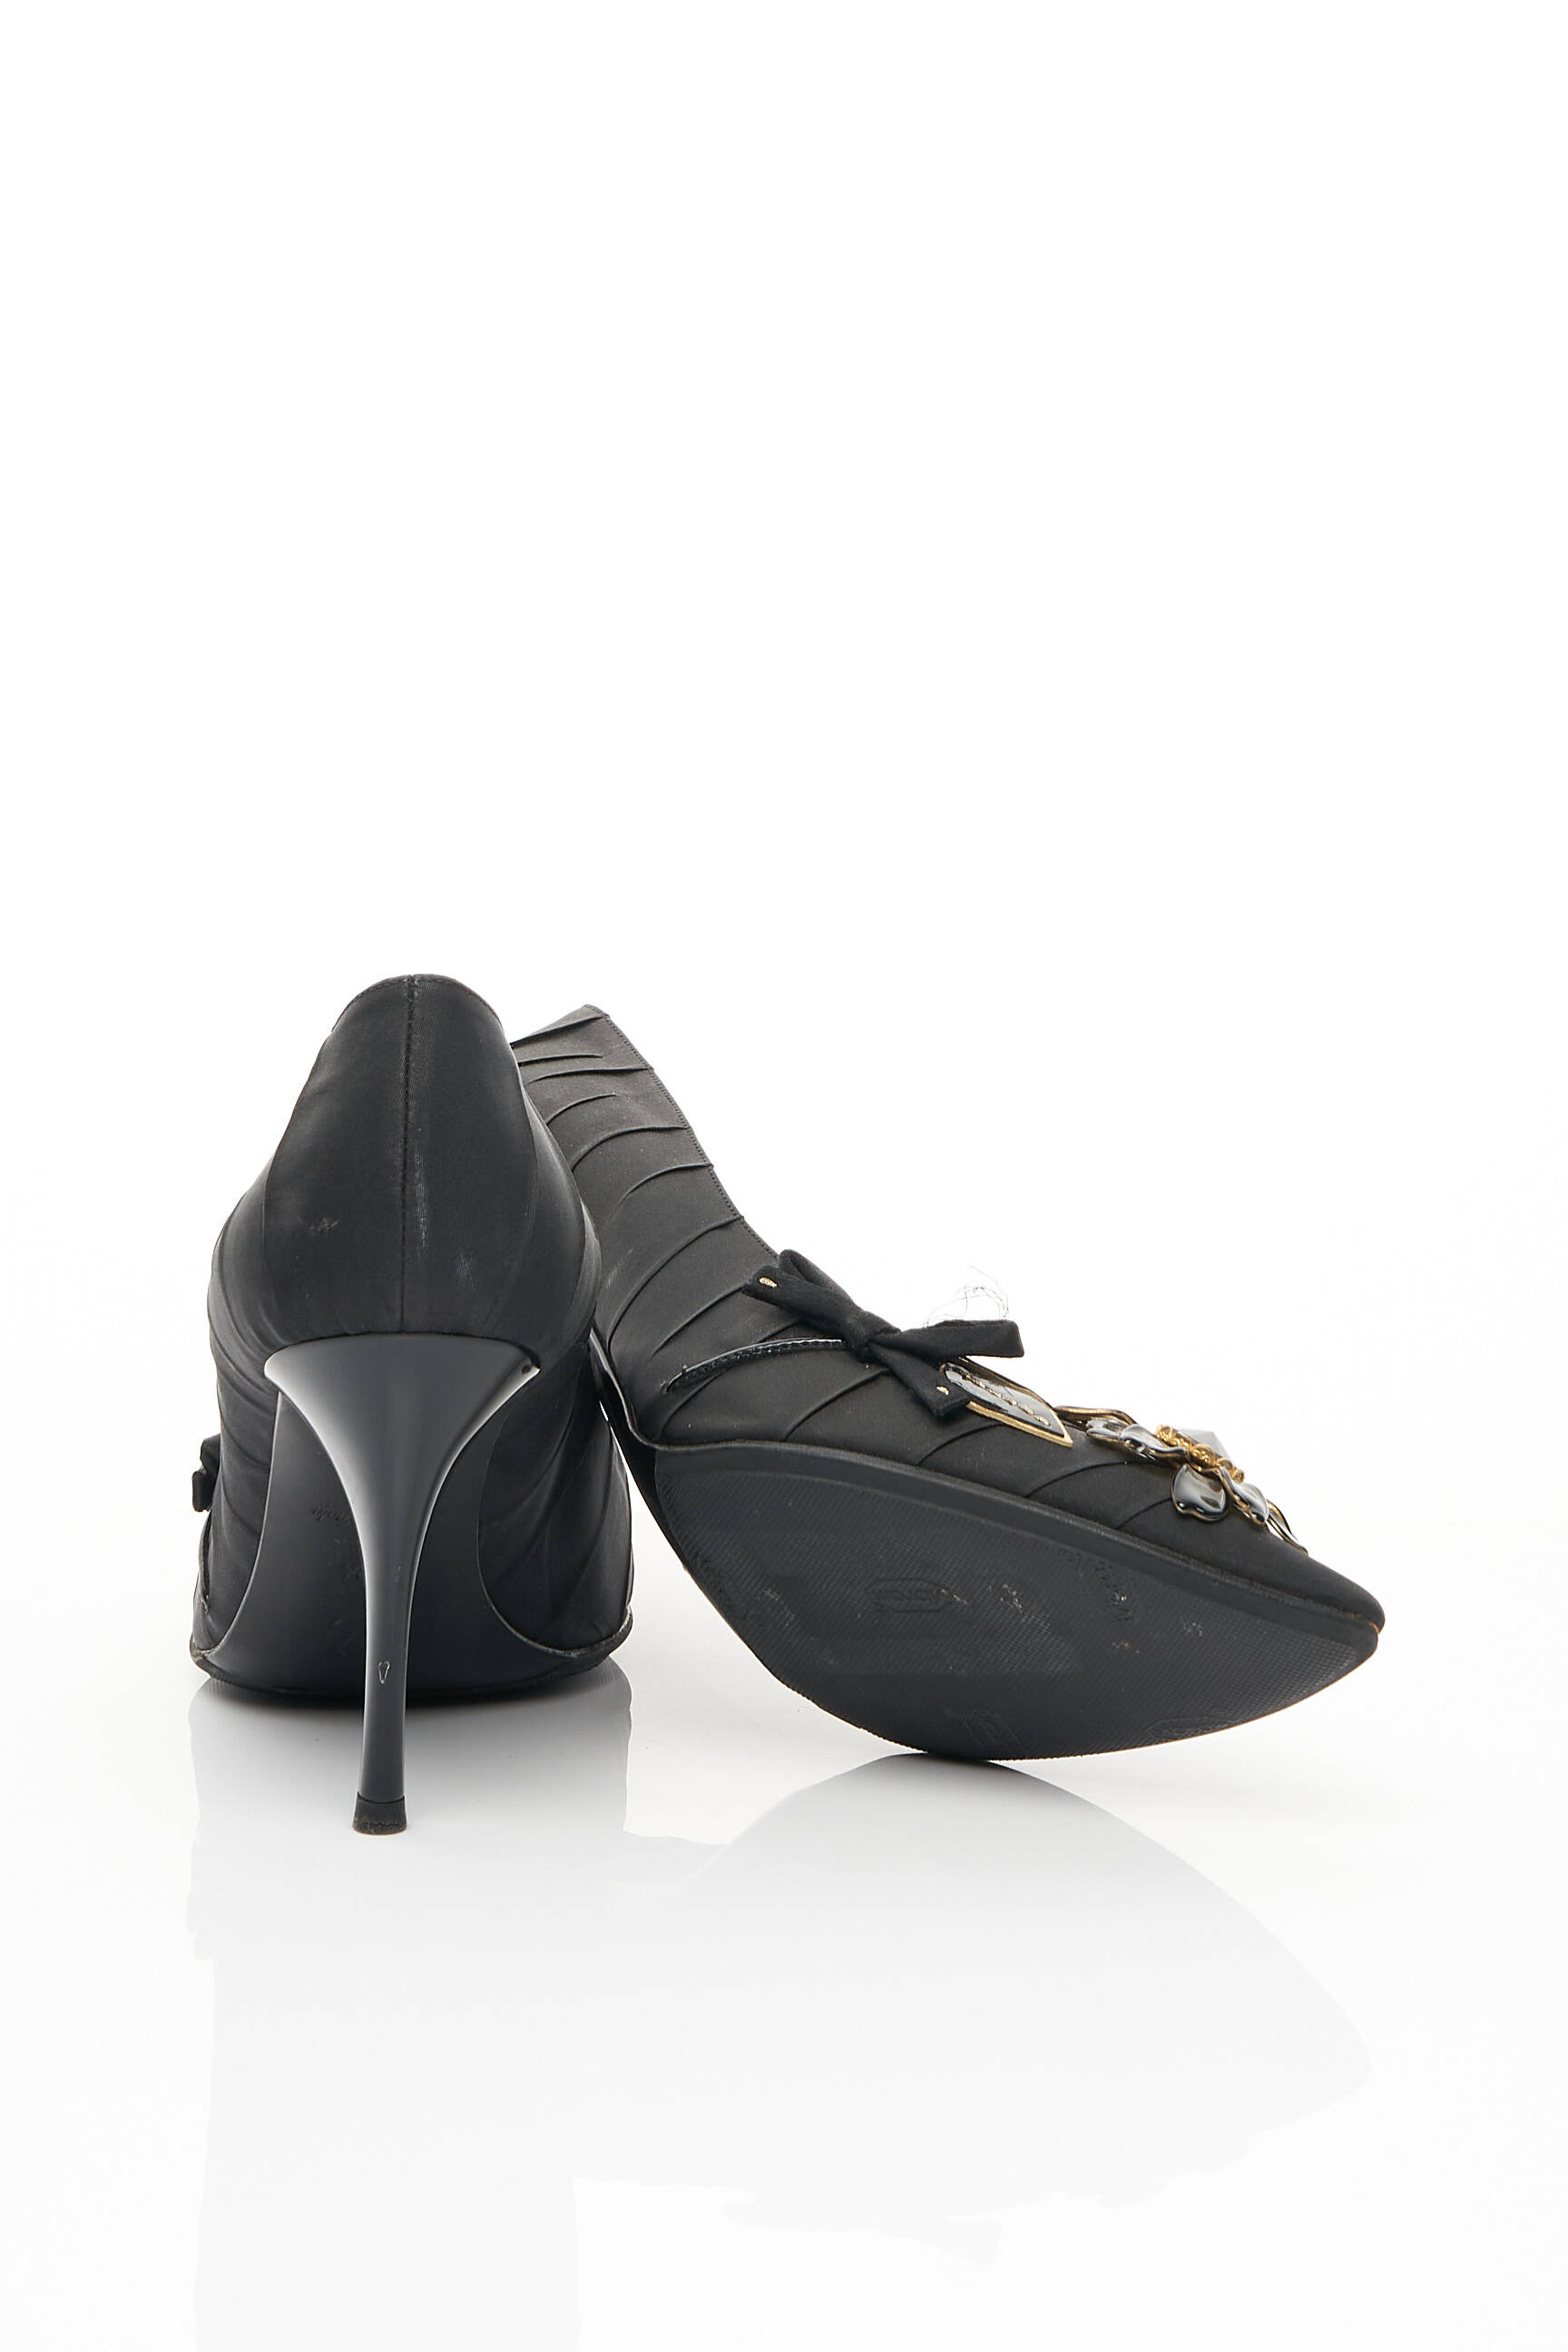 Chaussures Sandales Louis Vuitton Noir d'occasion